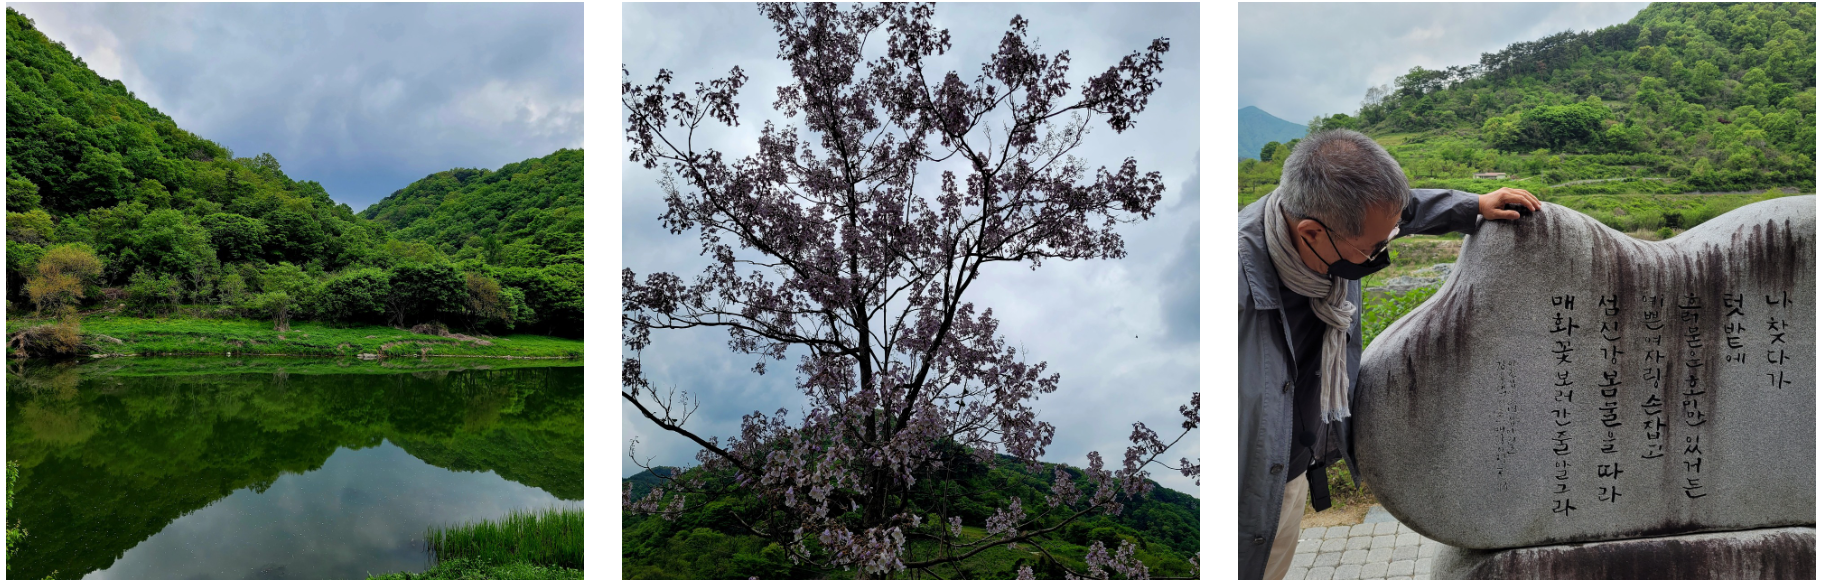 자건거길에서 바라본 섬진강(좌), 오동나무 꽃(중), 시인의 '봄날'시 설명(우)